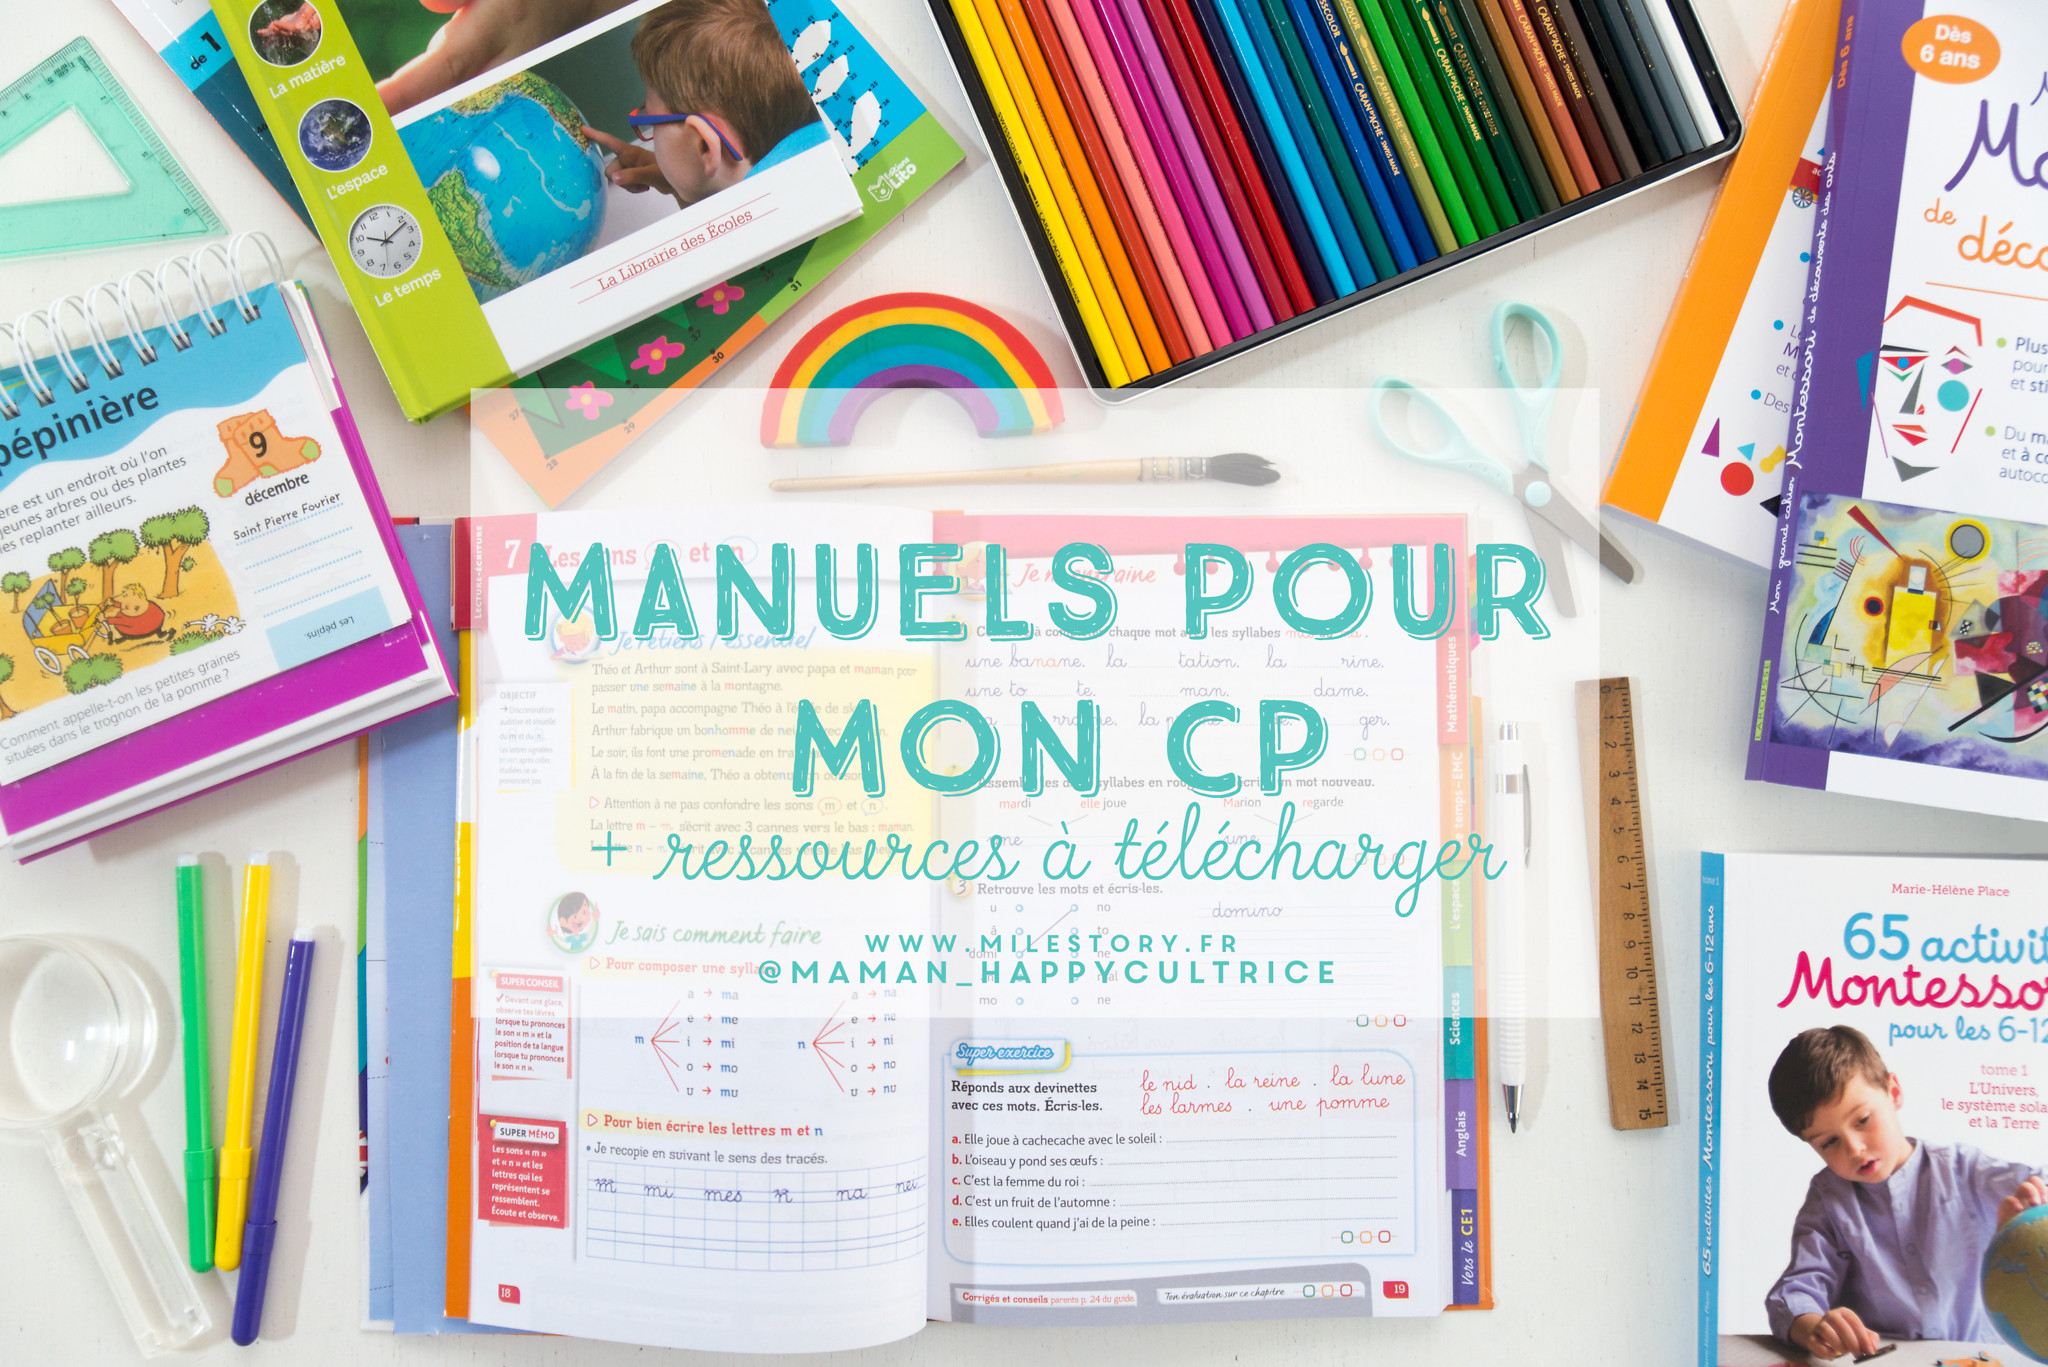 Ief Coschooling Les Manuels Pour Mon Cp Milestory